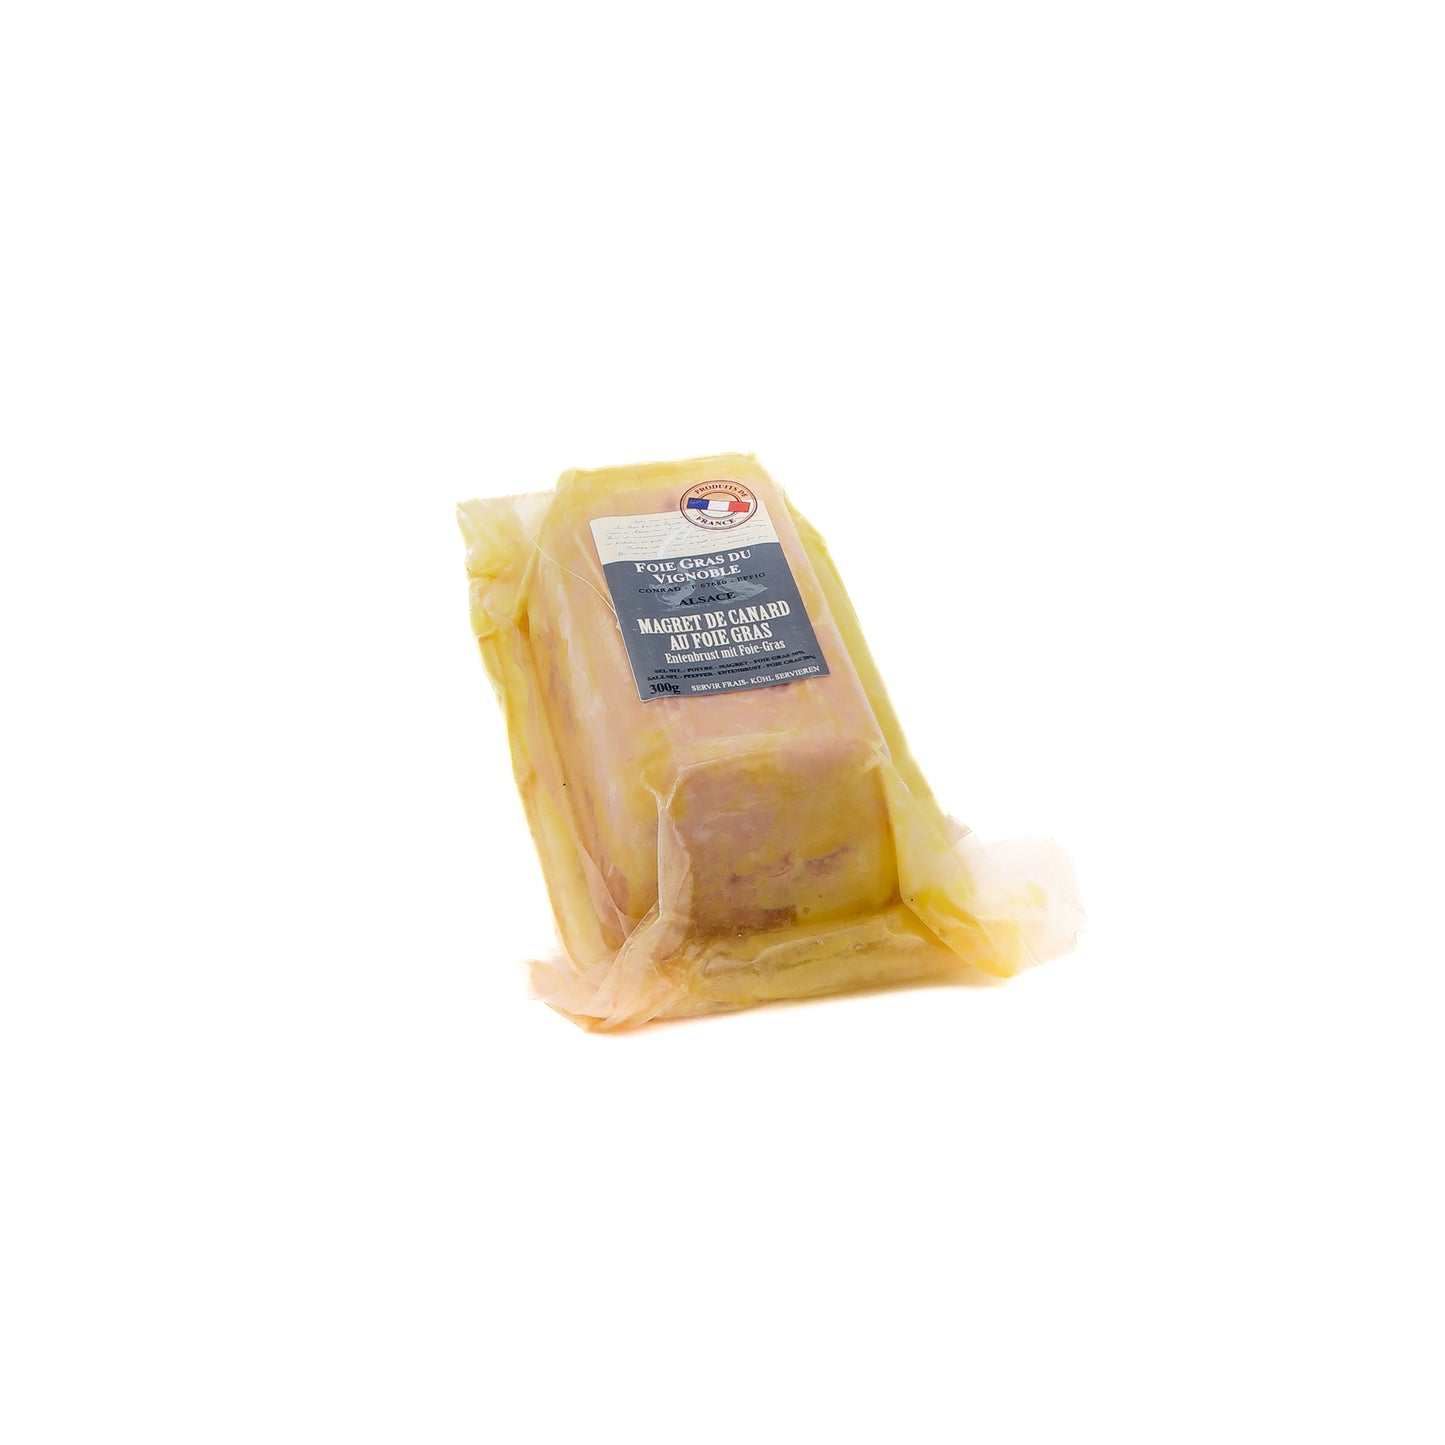 Magret de Canard au Foie Gras - 300g